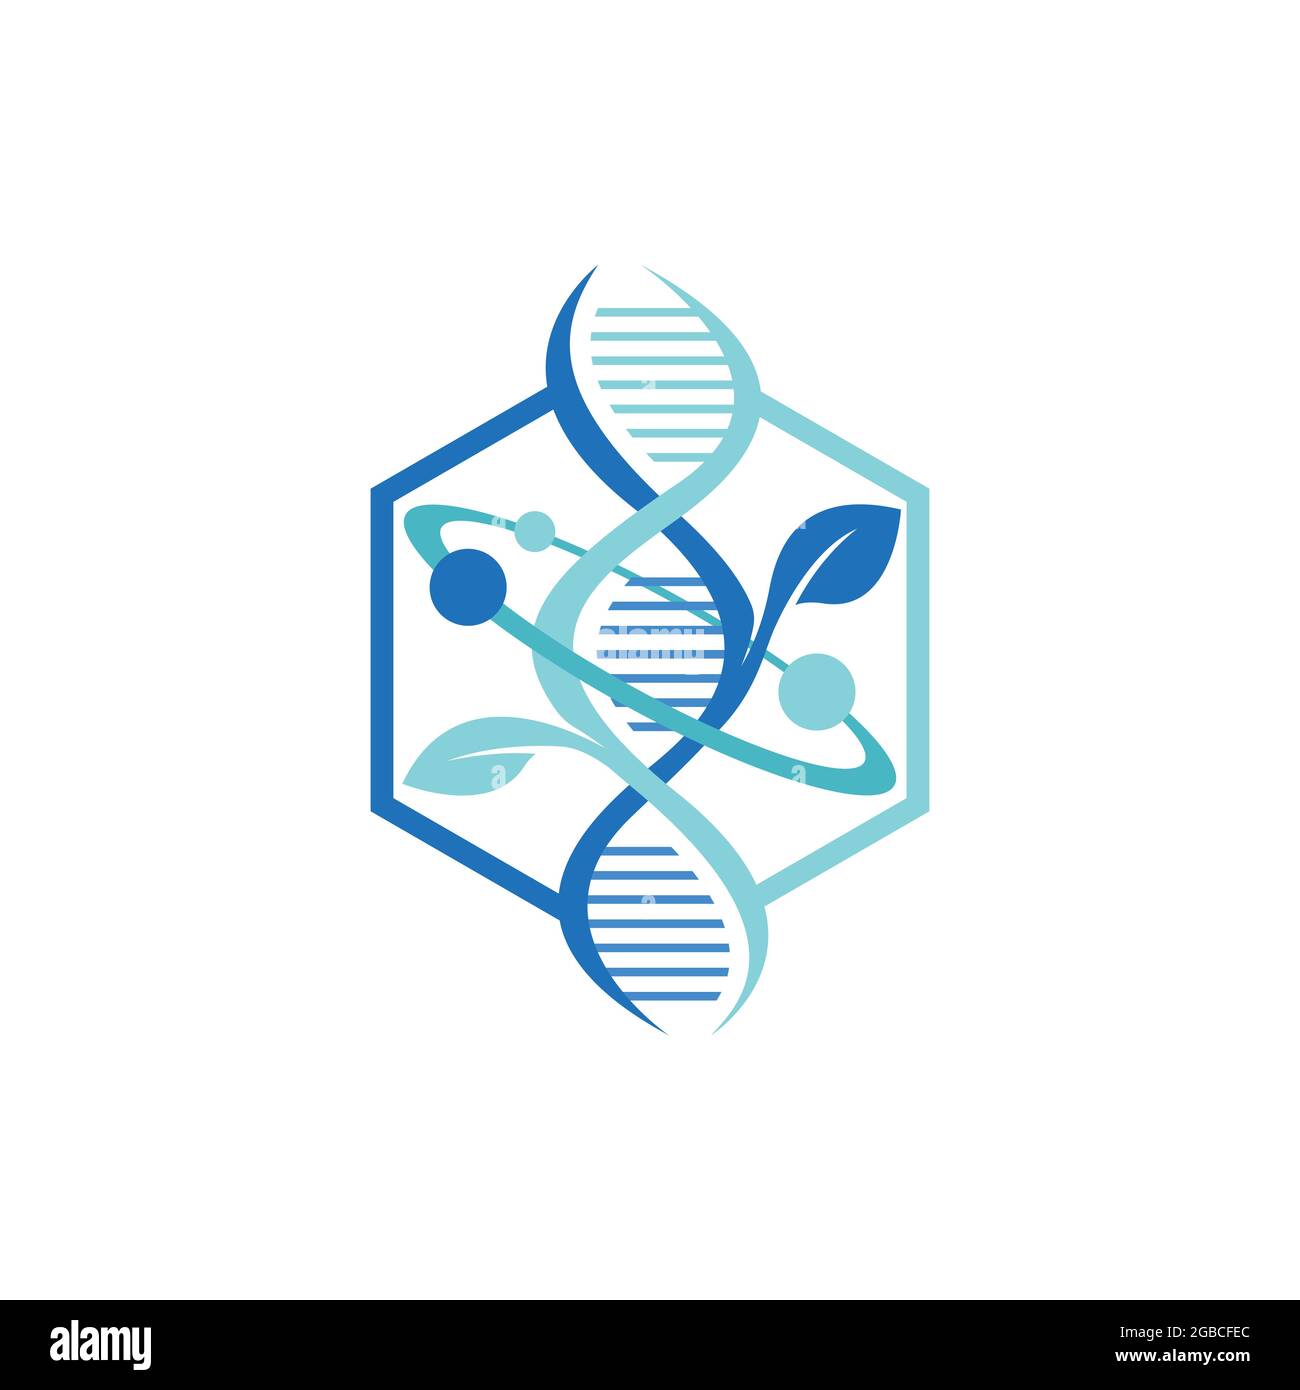 Logo de structure moléculaire de l'atome d'ADN hexagonal. Chimie DNA Molecule structure scientifique Atom Business Brand Vector logo design Illustration de Vecteur